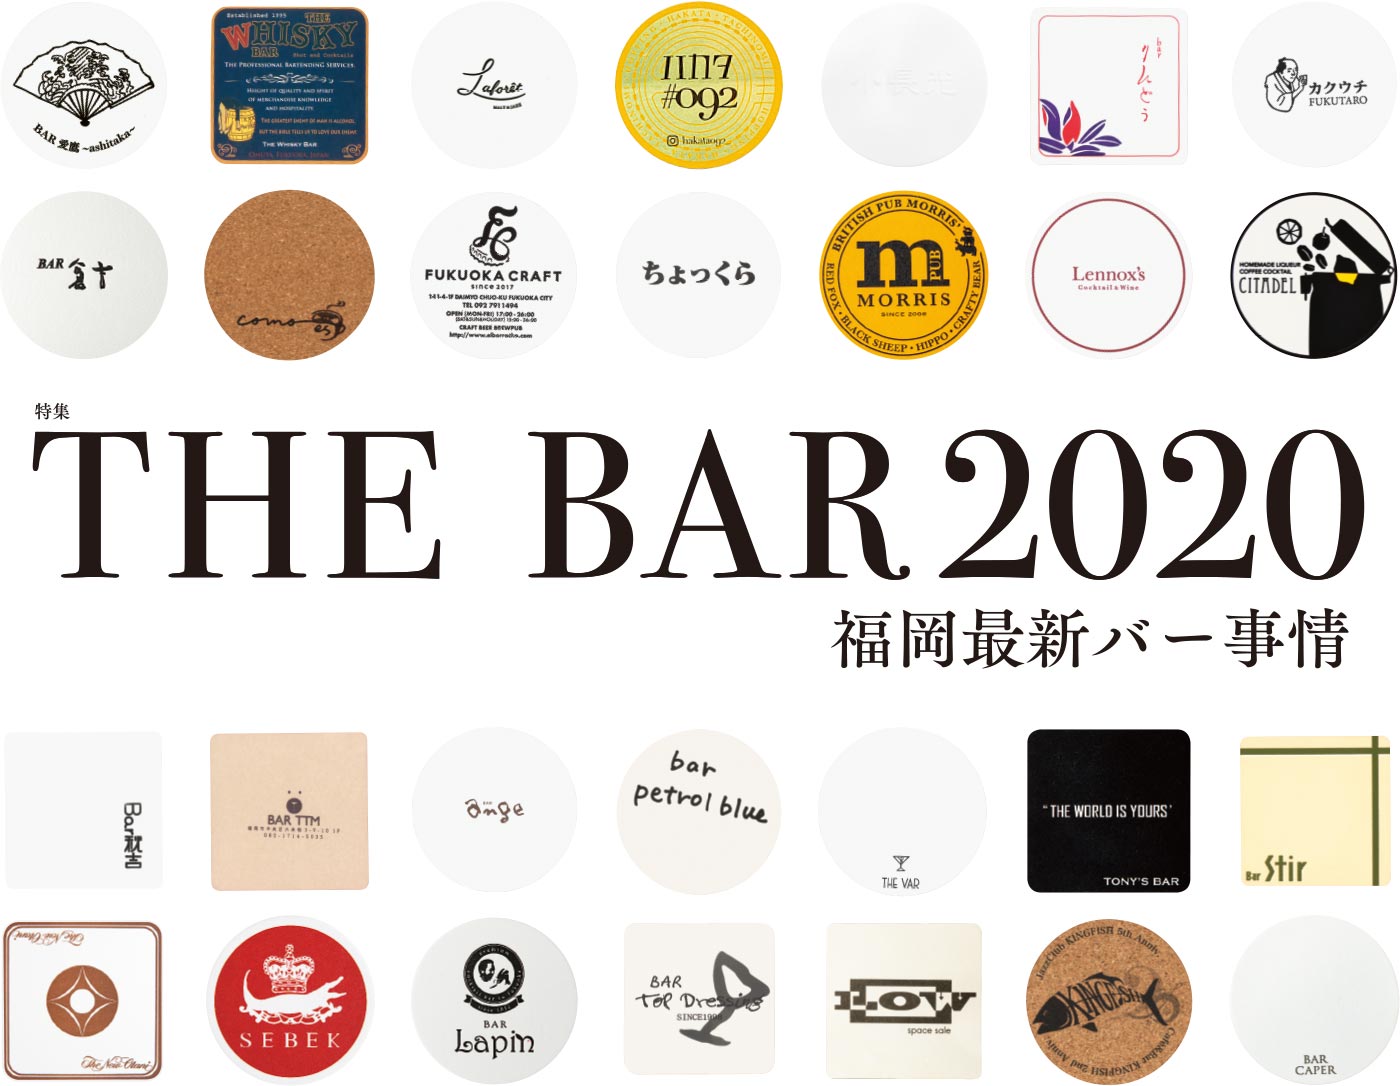 THE BAR 2020 福岡最新バー事情